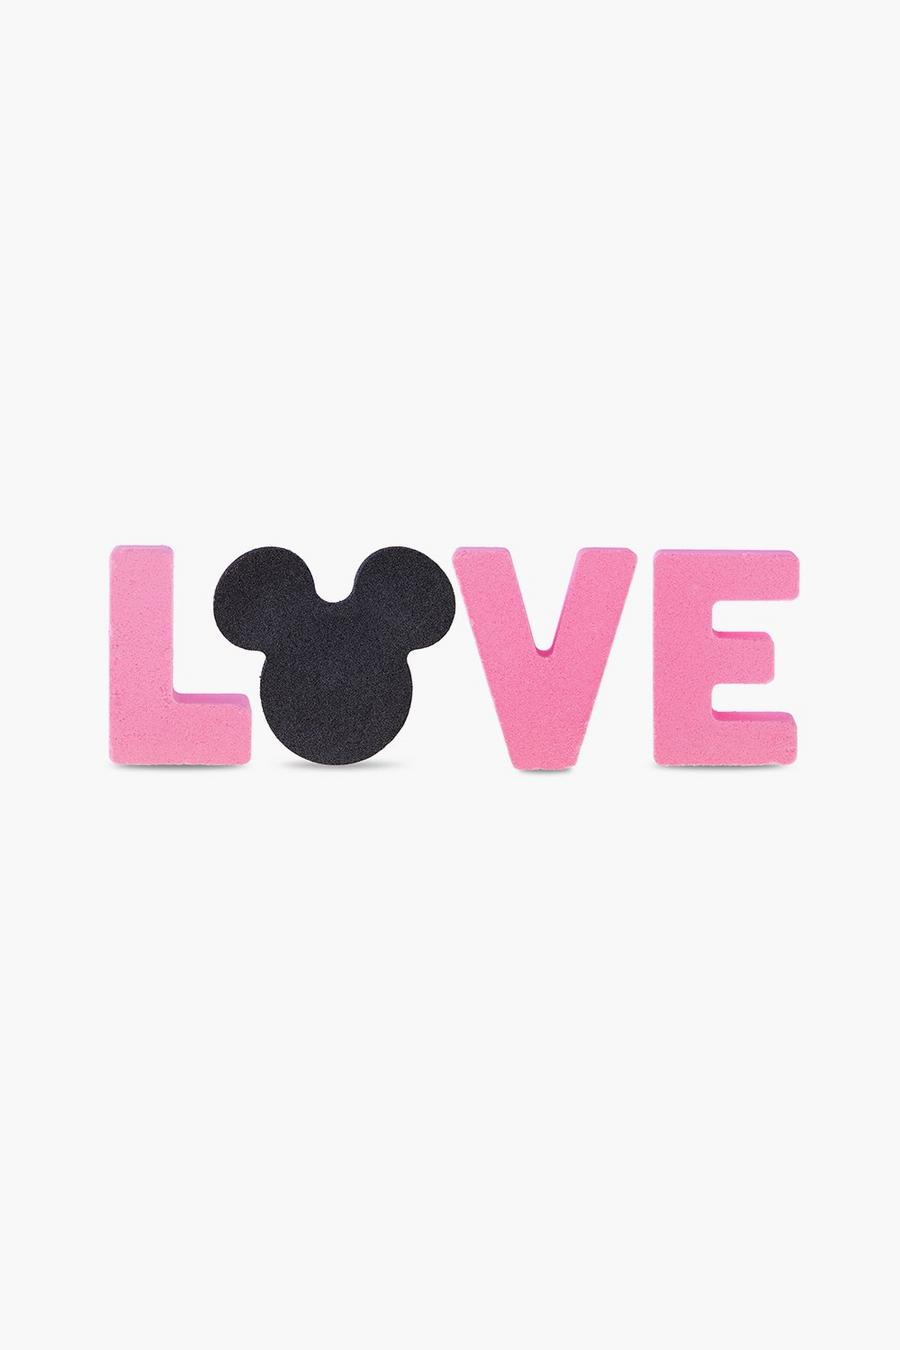 Mad Beauty x Disney - Bombes de bain pour la Saint-Valentin, Pink